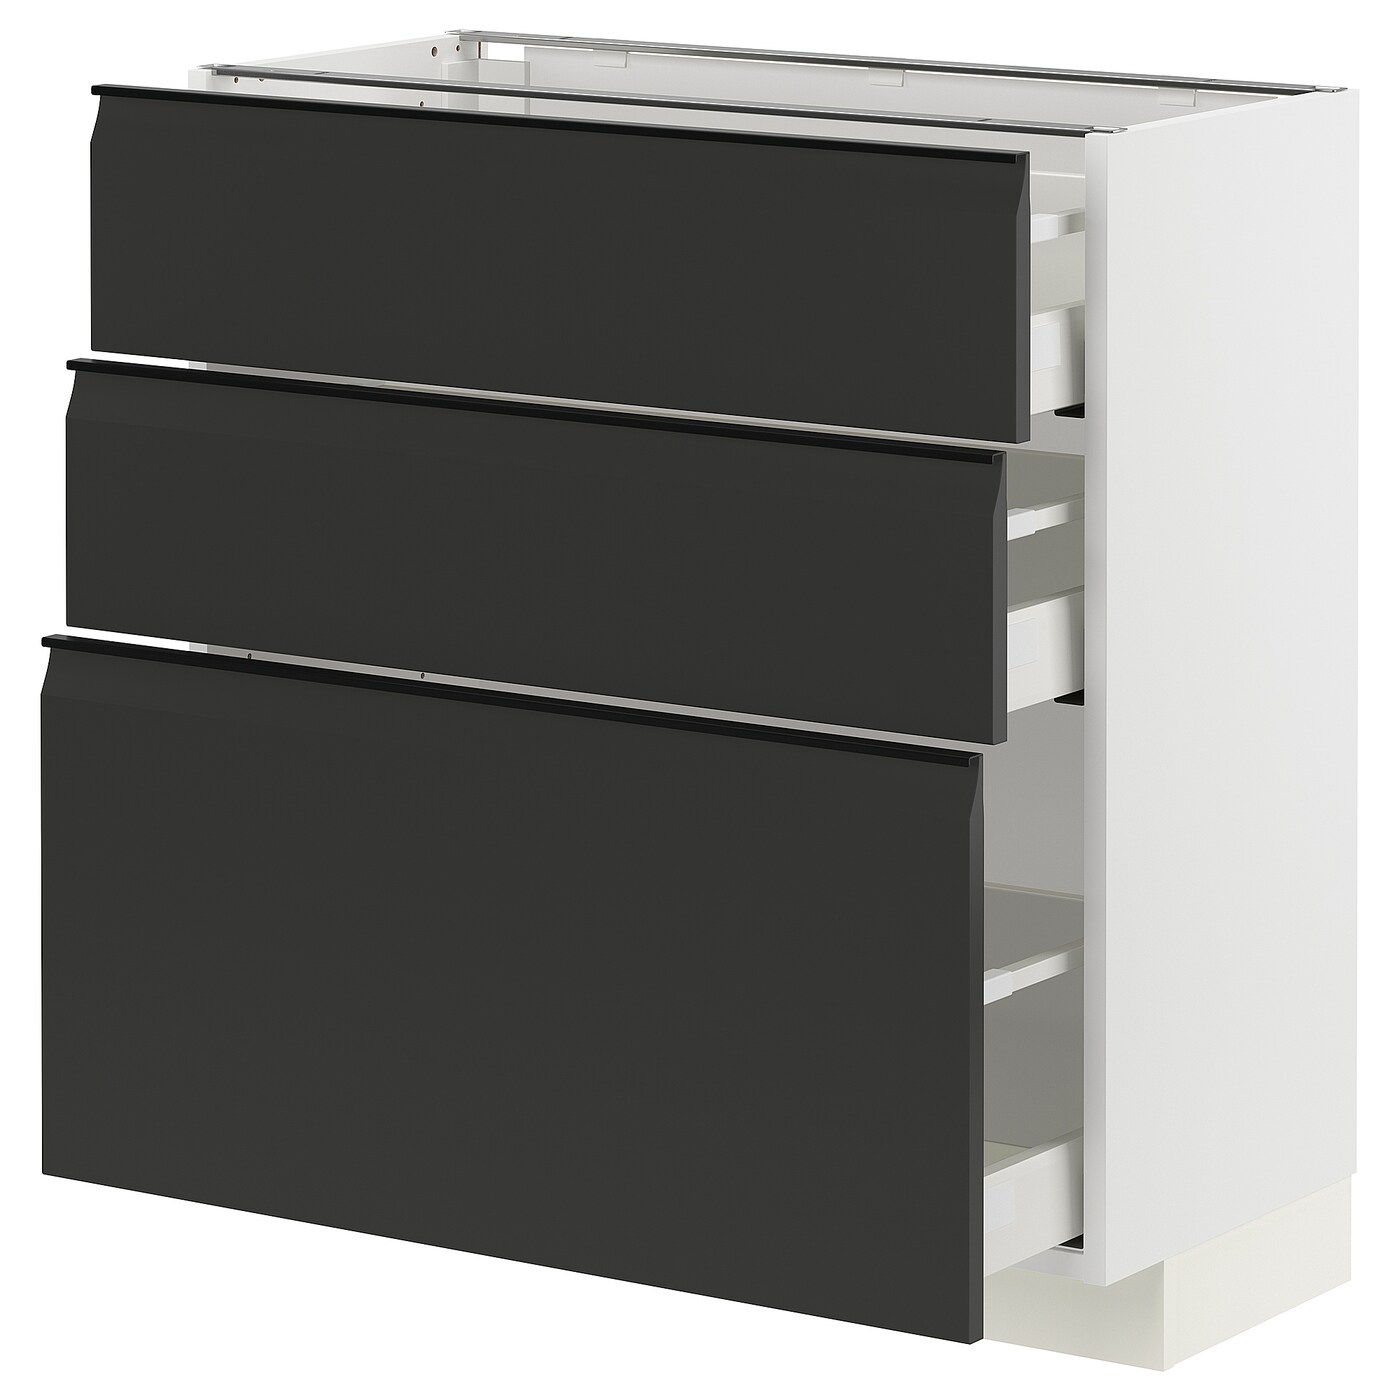 Напольный шкаф - METOD / MAXIMERA IKEA/ МЕТОД/ МАКСИМЕРА ИКЕА,  88х80 см, белый/черный